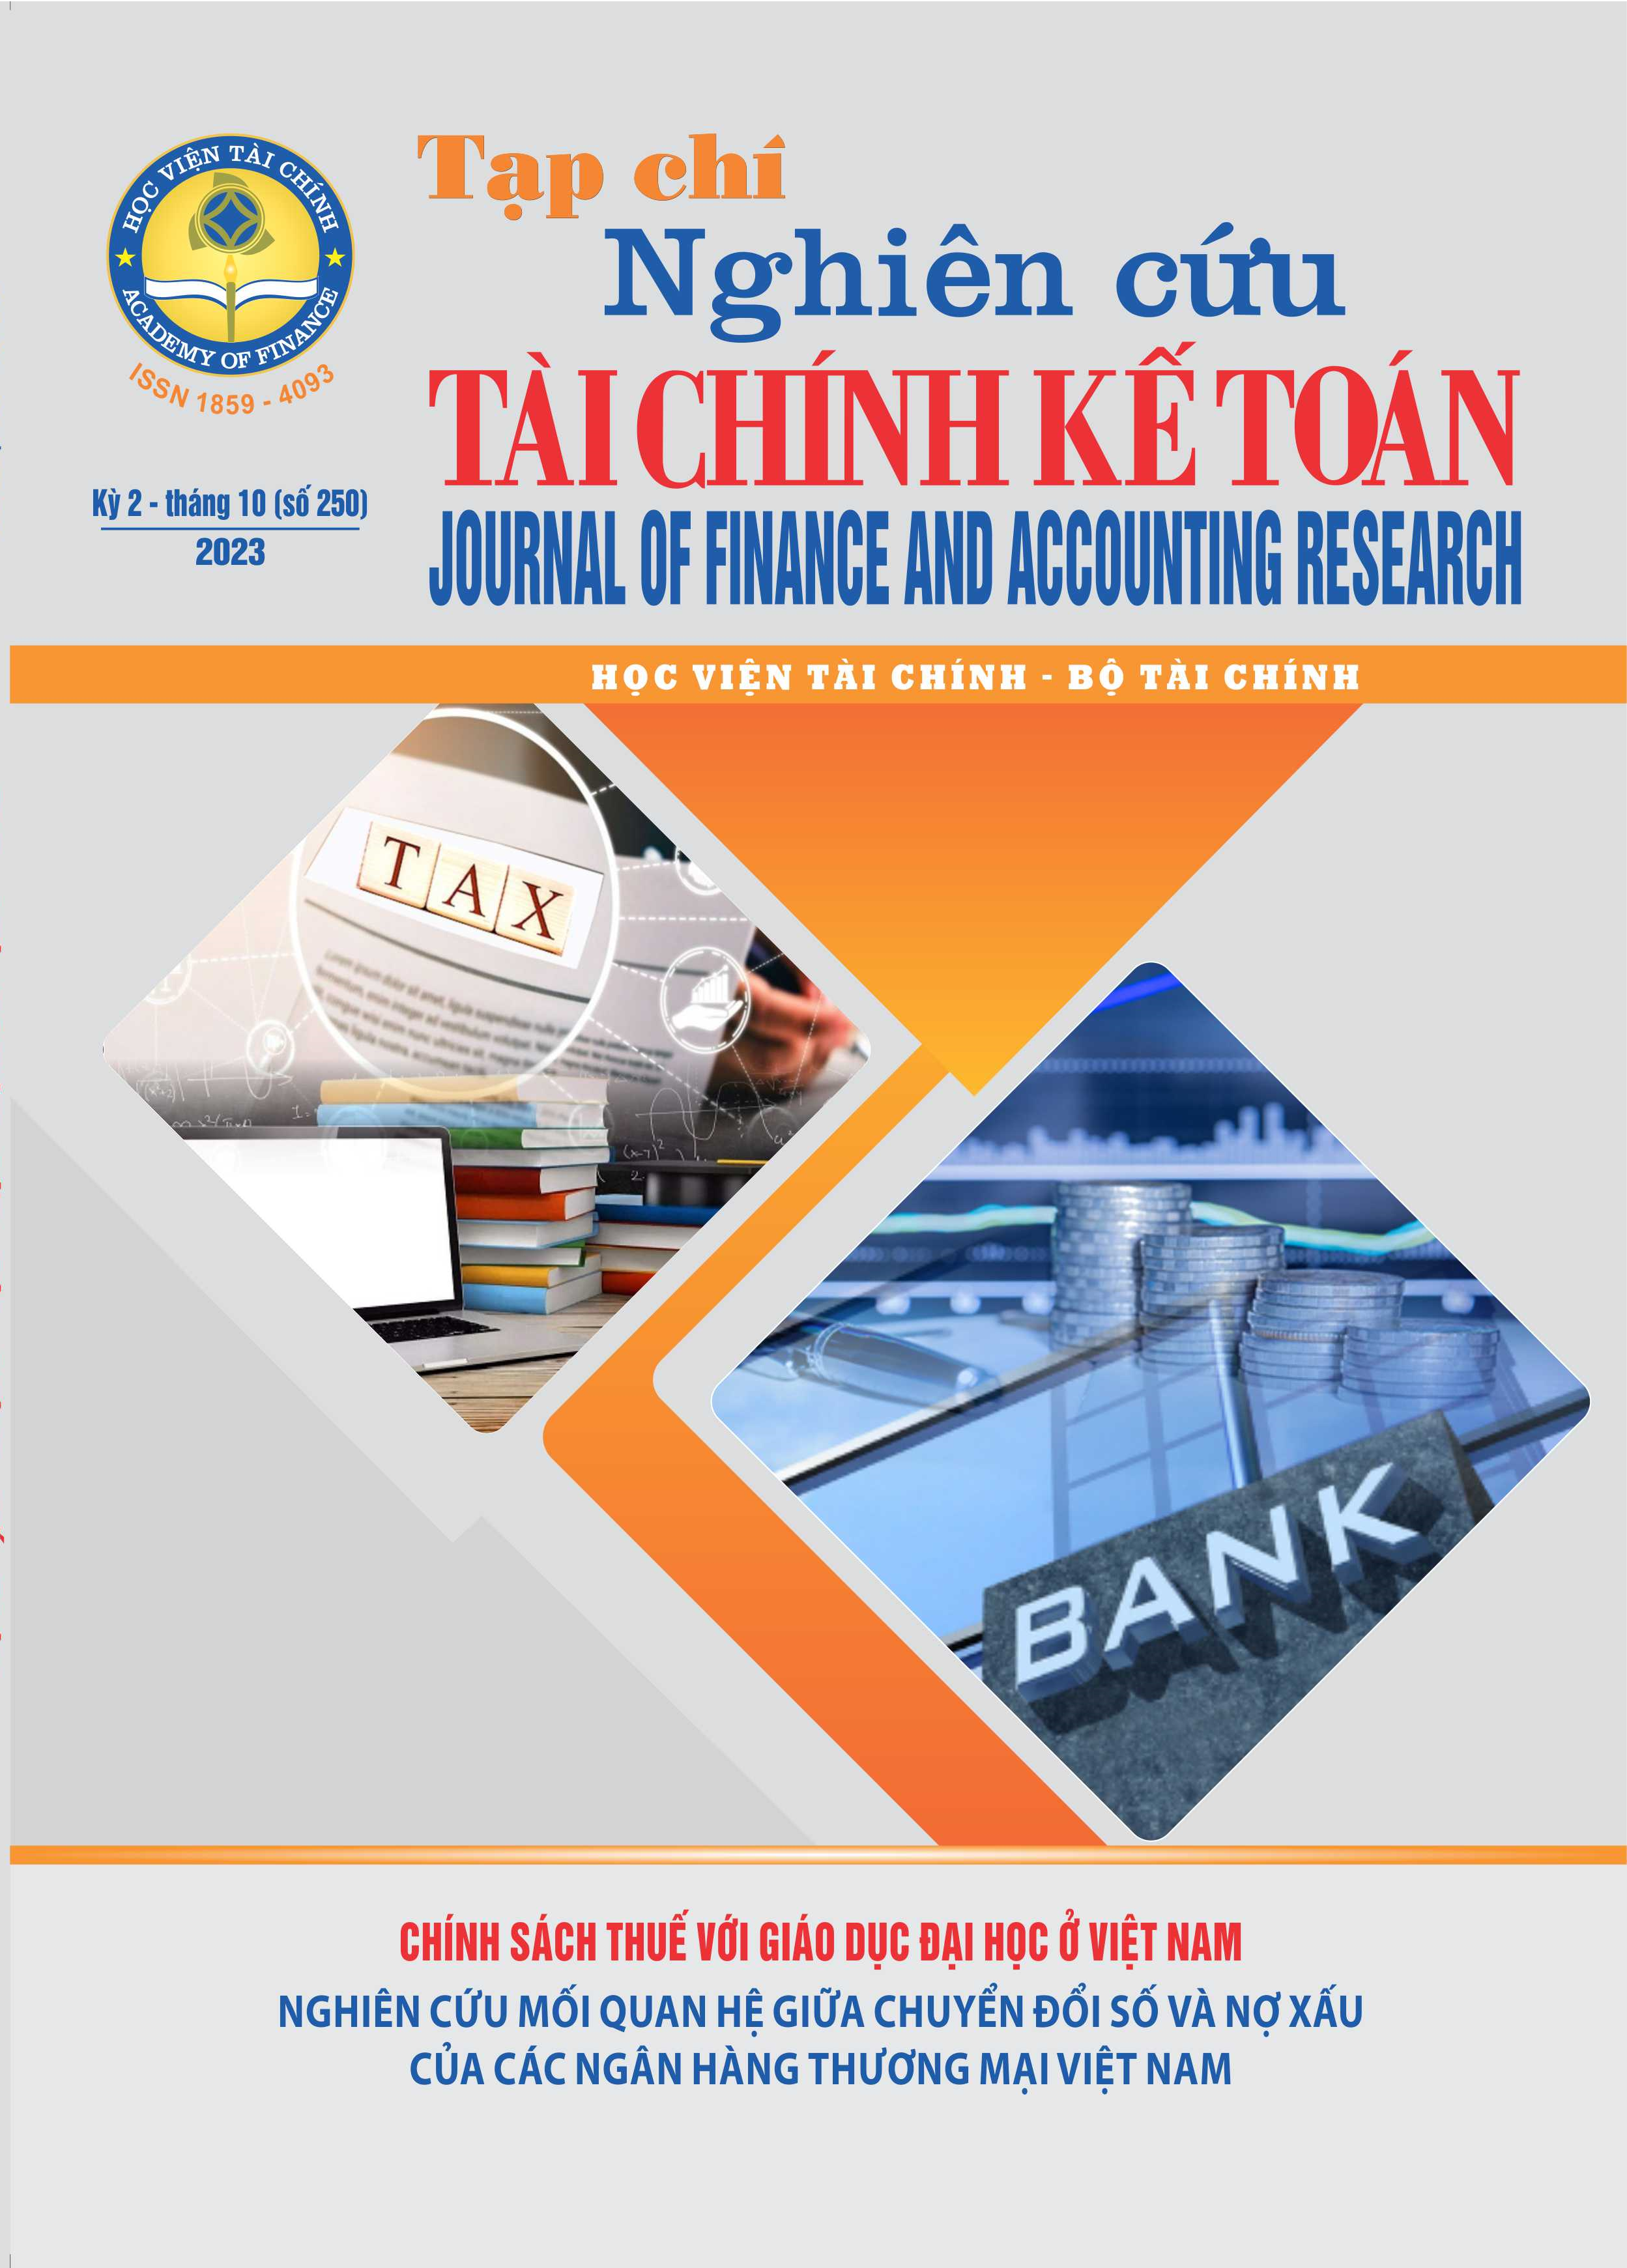 Tạp chí Nghiên cứu Tài chính Kế toán (Kỳ 2 - T10 (250) 2023)